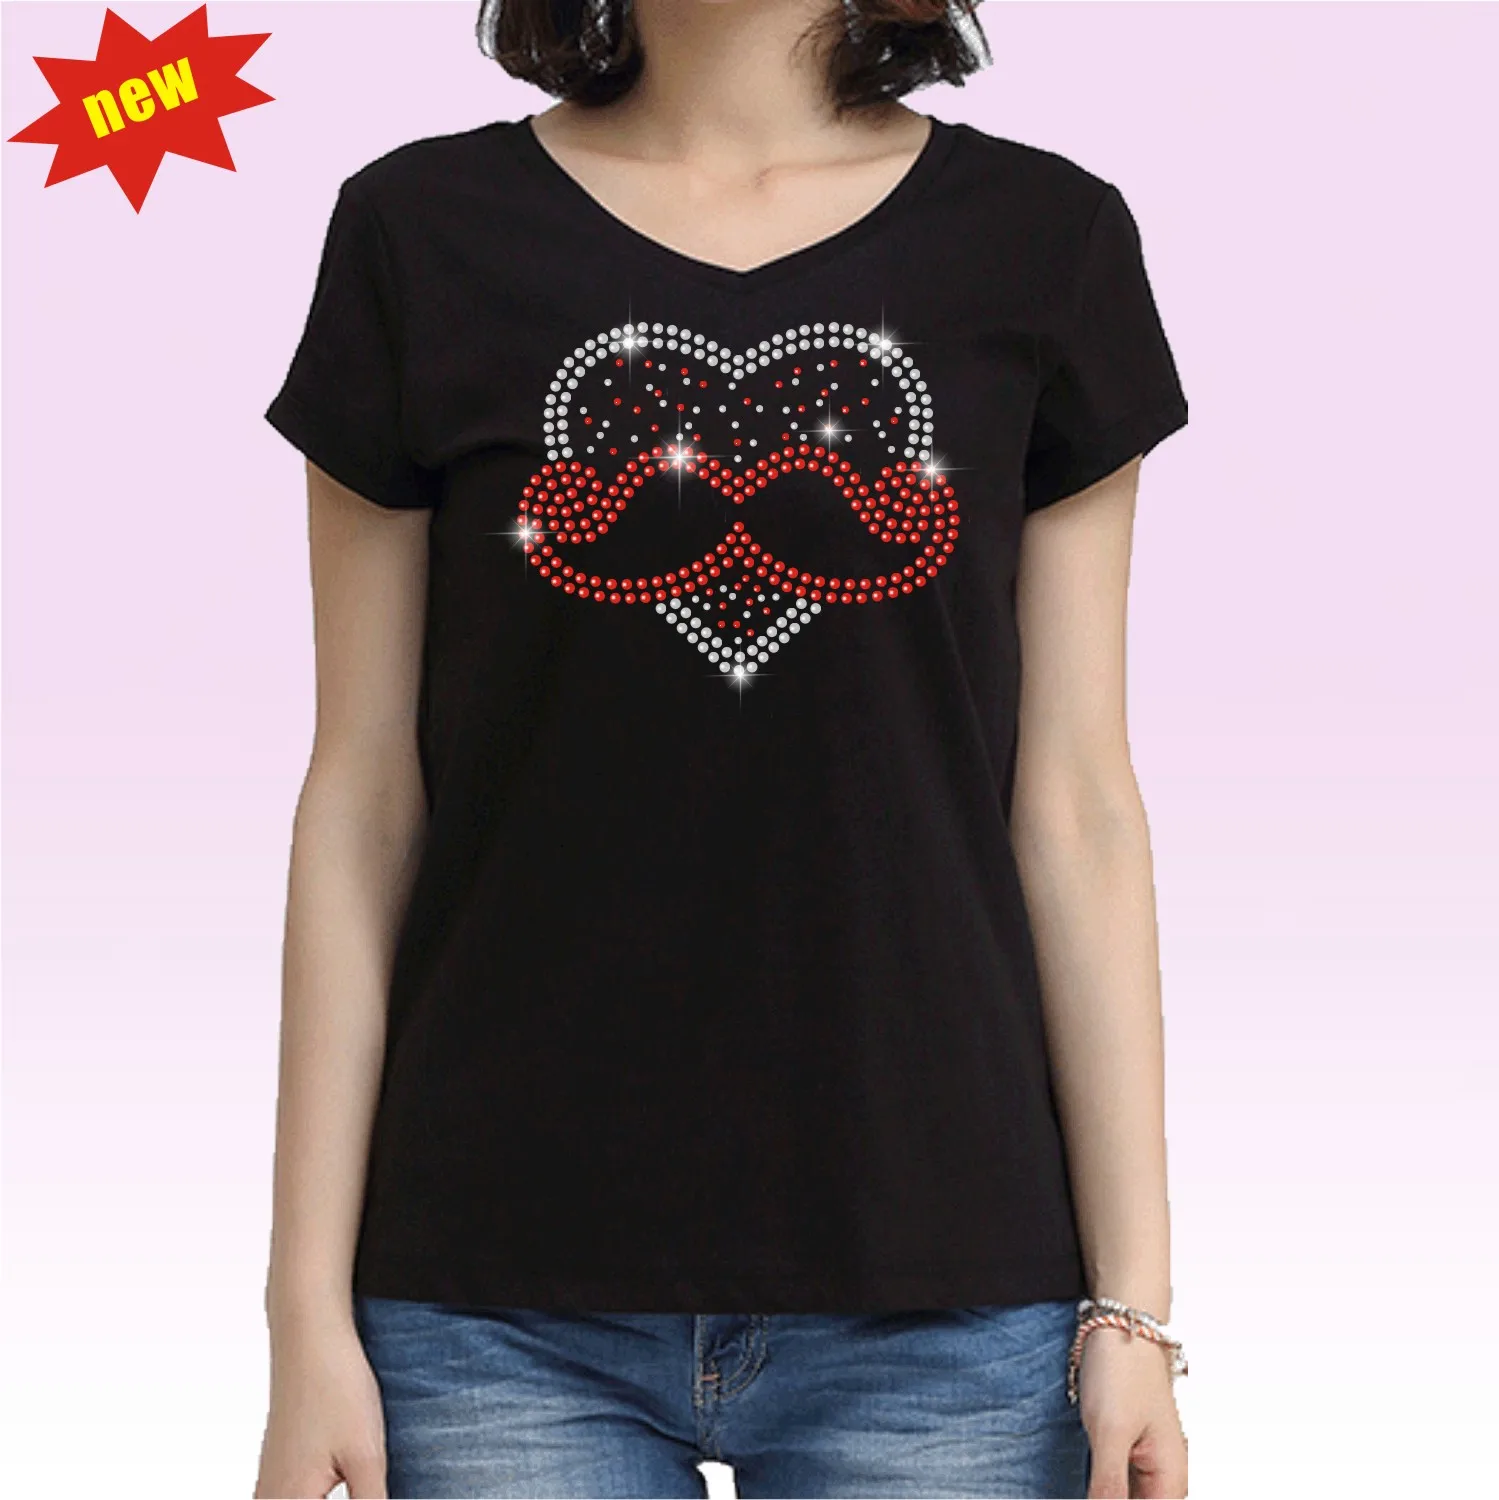 バレンタインラインストーン用のデザインテンプレート Tシャツ 32 Buy バレンタインラインストーンのデザイン ラインストーンのデザイン ラインストーン Product On Alibaba Com